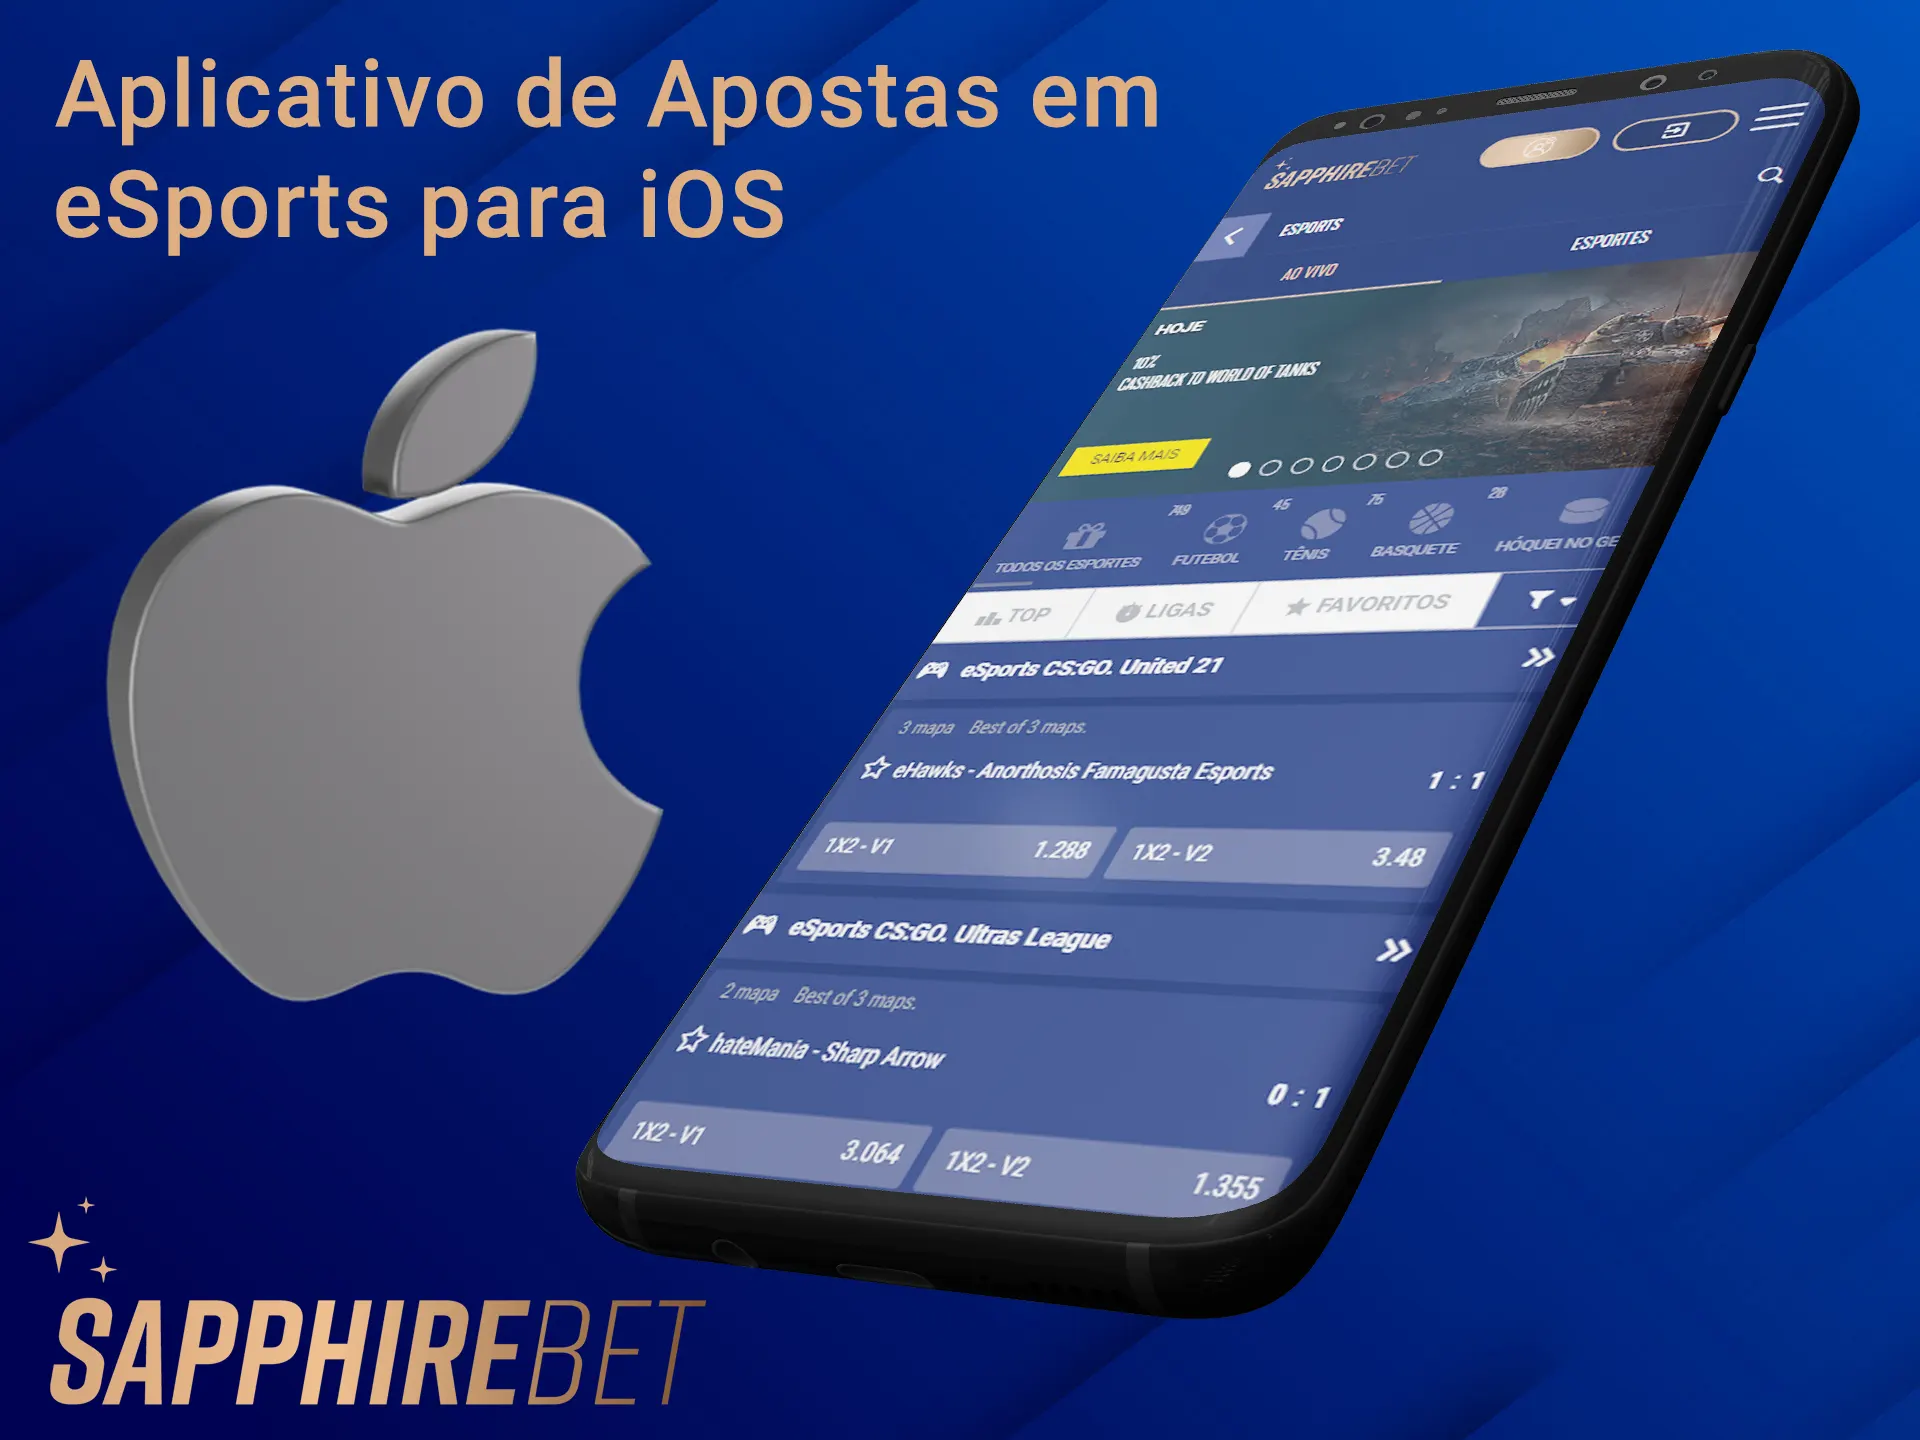 Faça apostas em esportes eletrônicos usando o aplicativo Sapphirebet iOS.